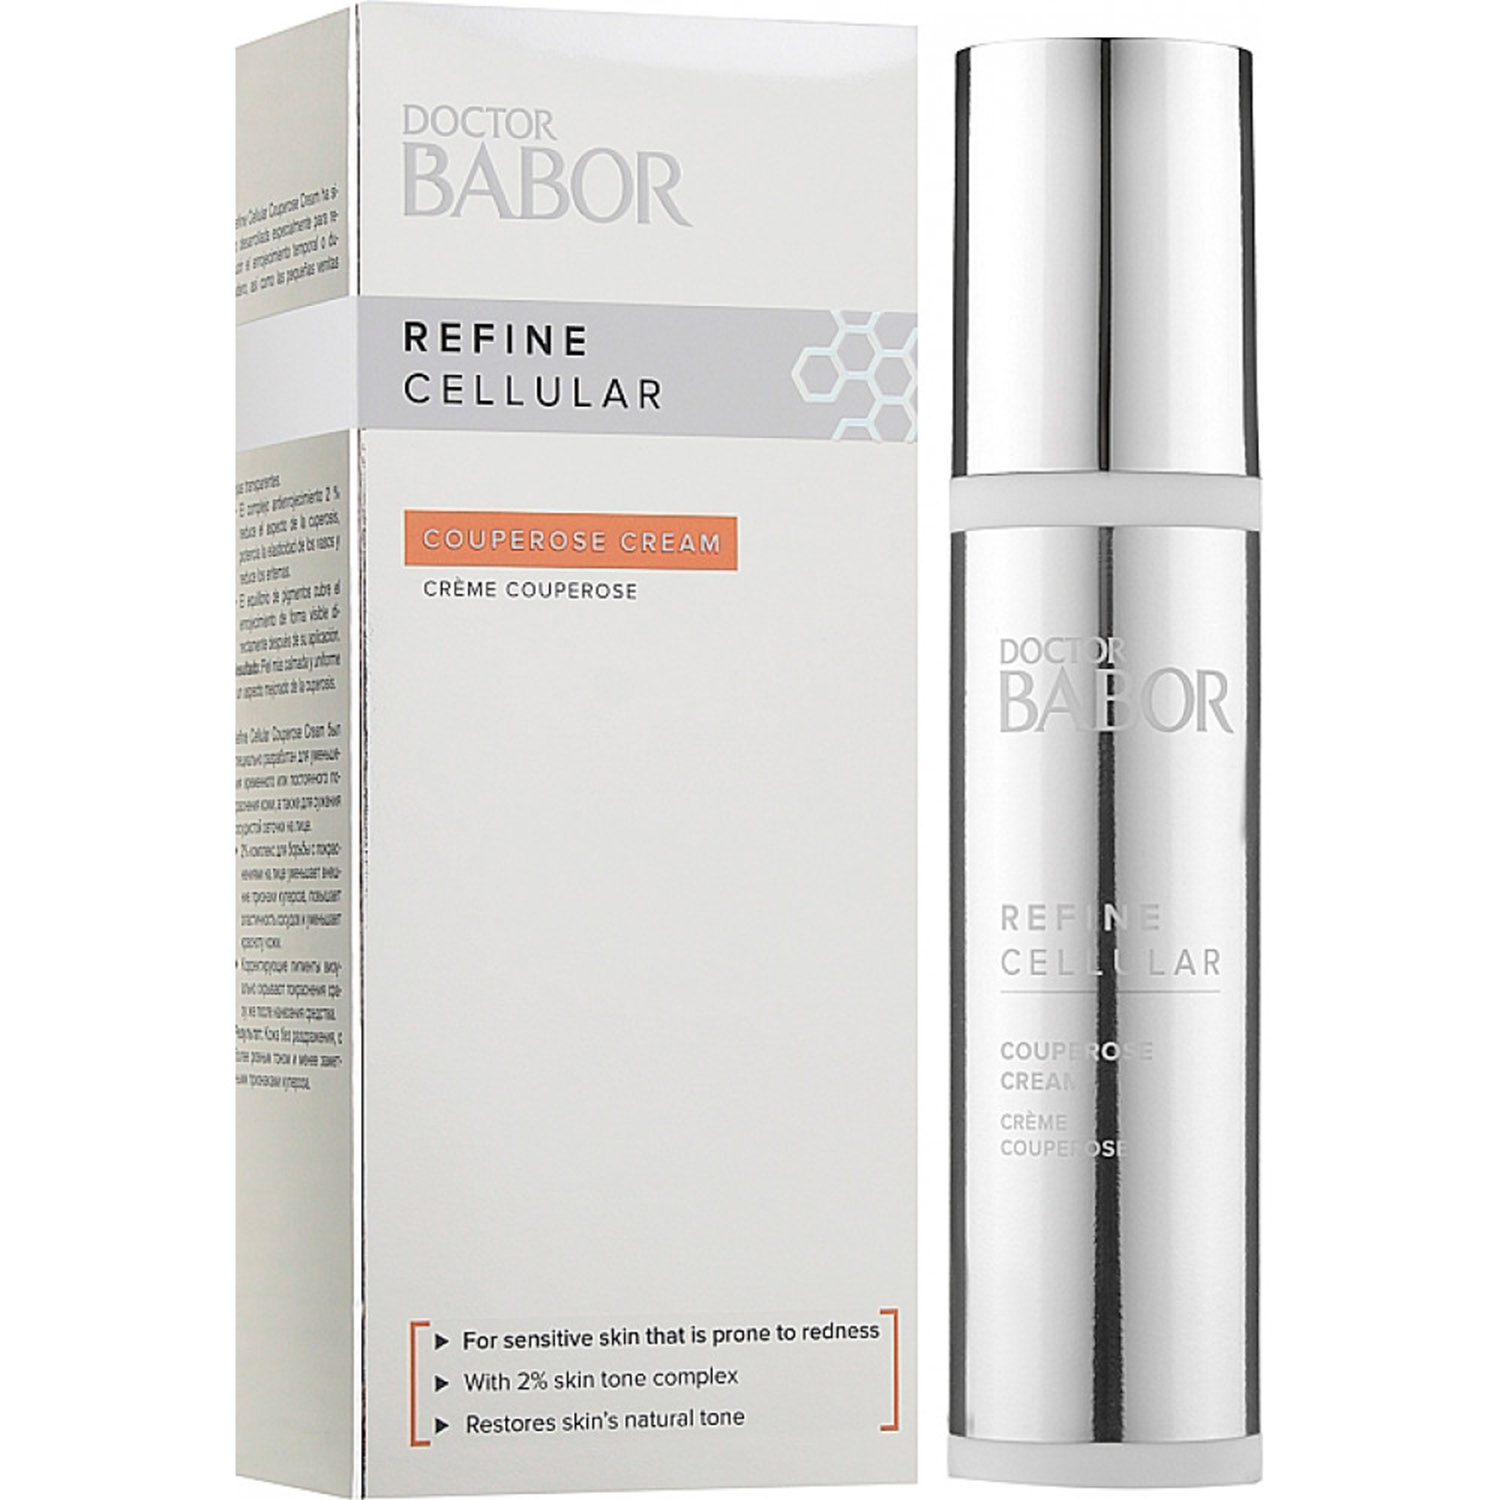 Крем для лица Babor Doctor Babor Refine Cellular Couperose Cream против купероза, 50 мл - фото 1